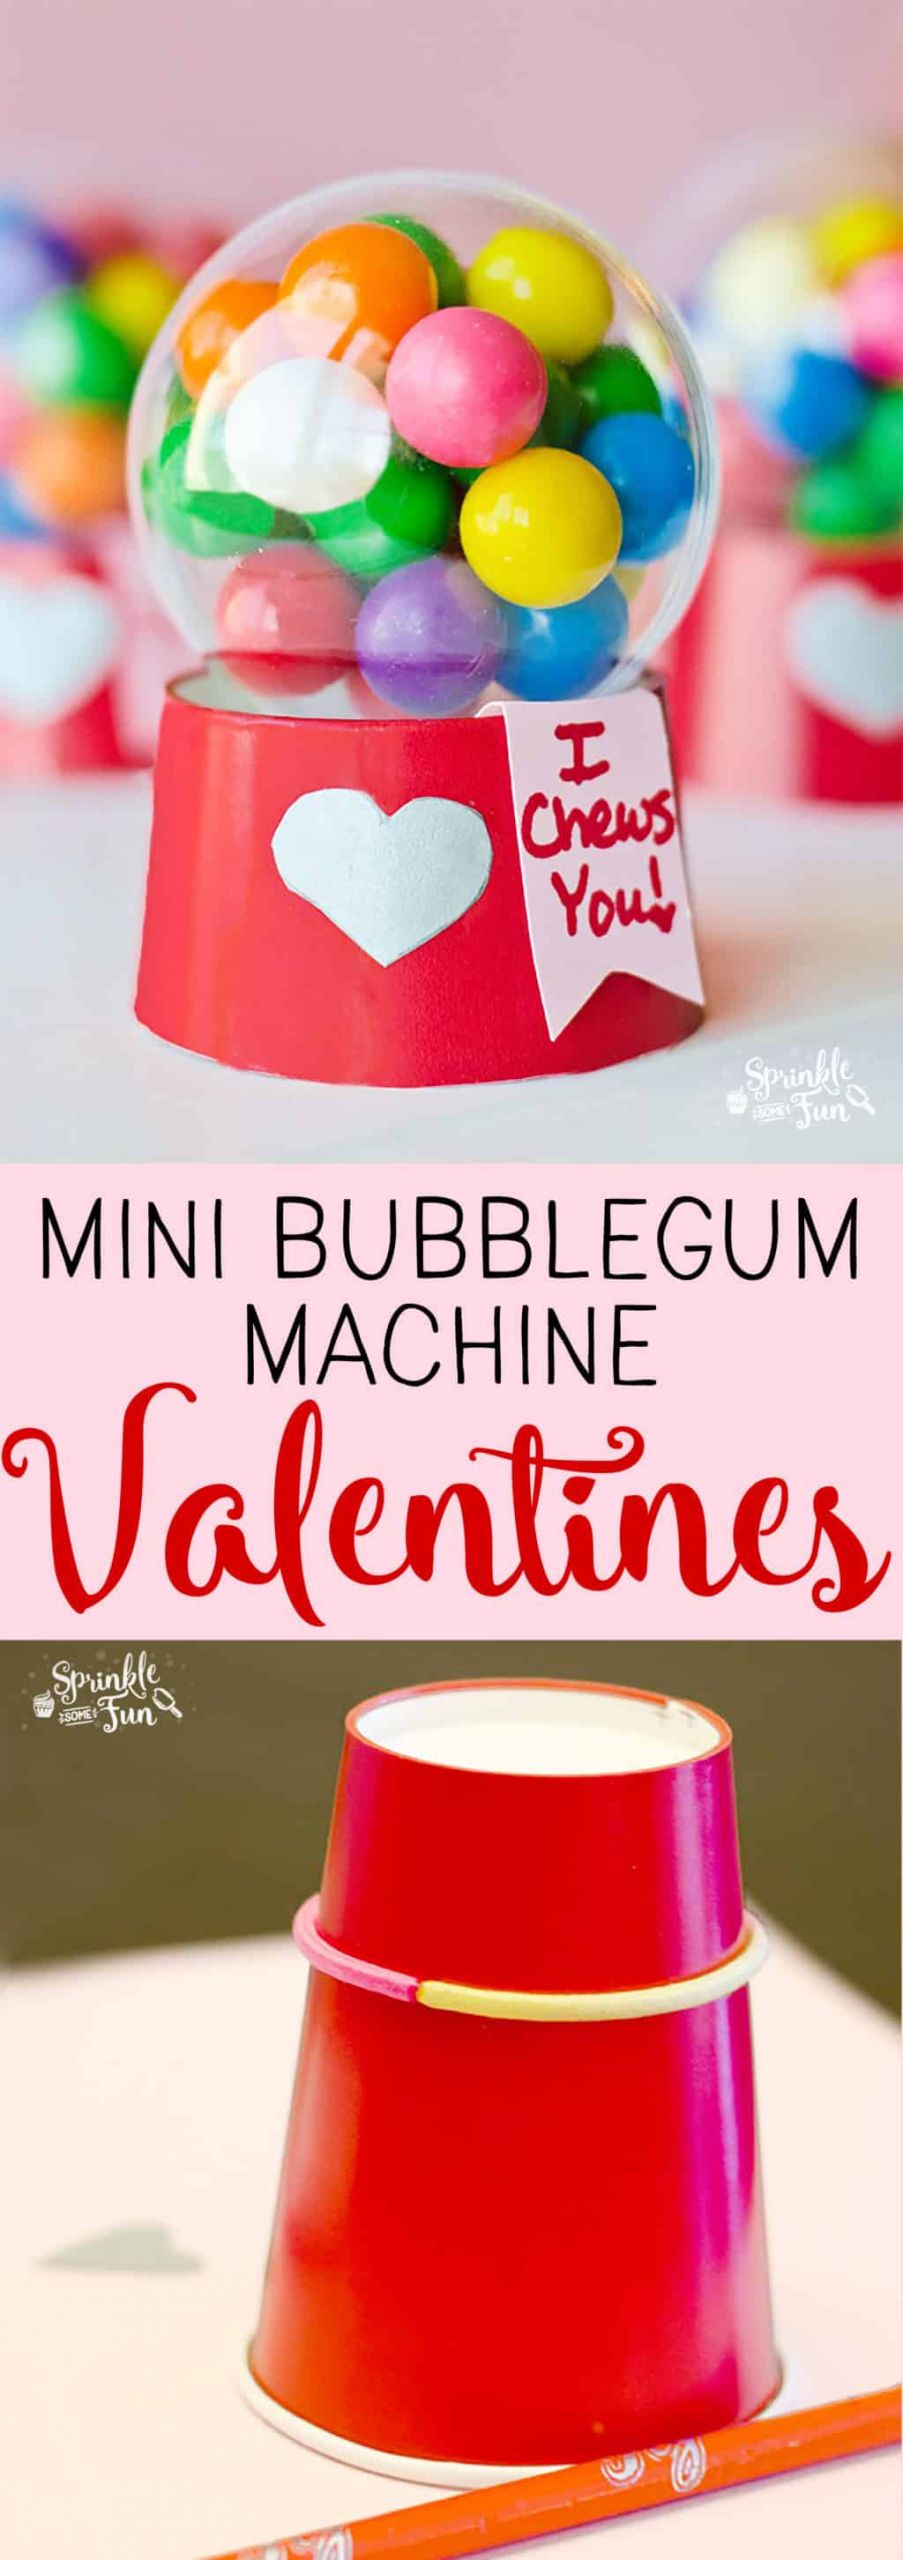 Valentines Gifts For Children
 Mini Bubblegum Machine Valentines